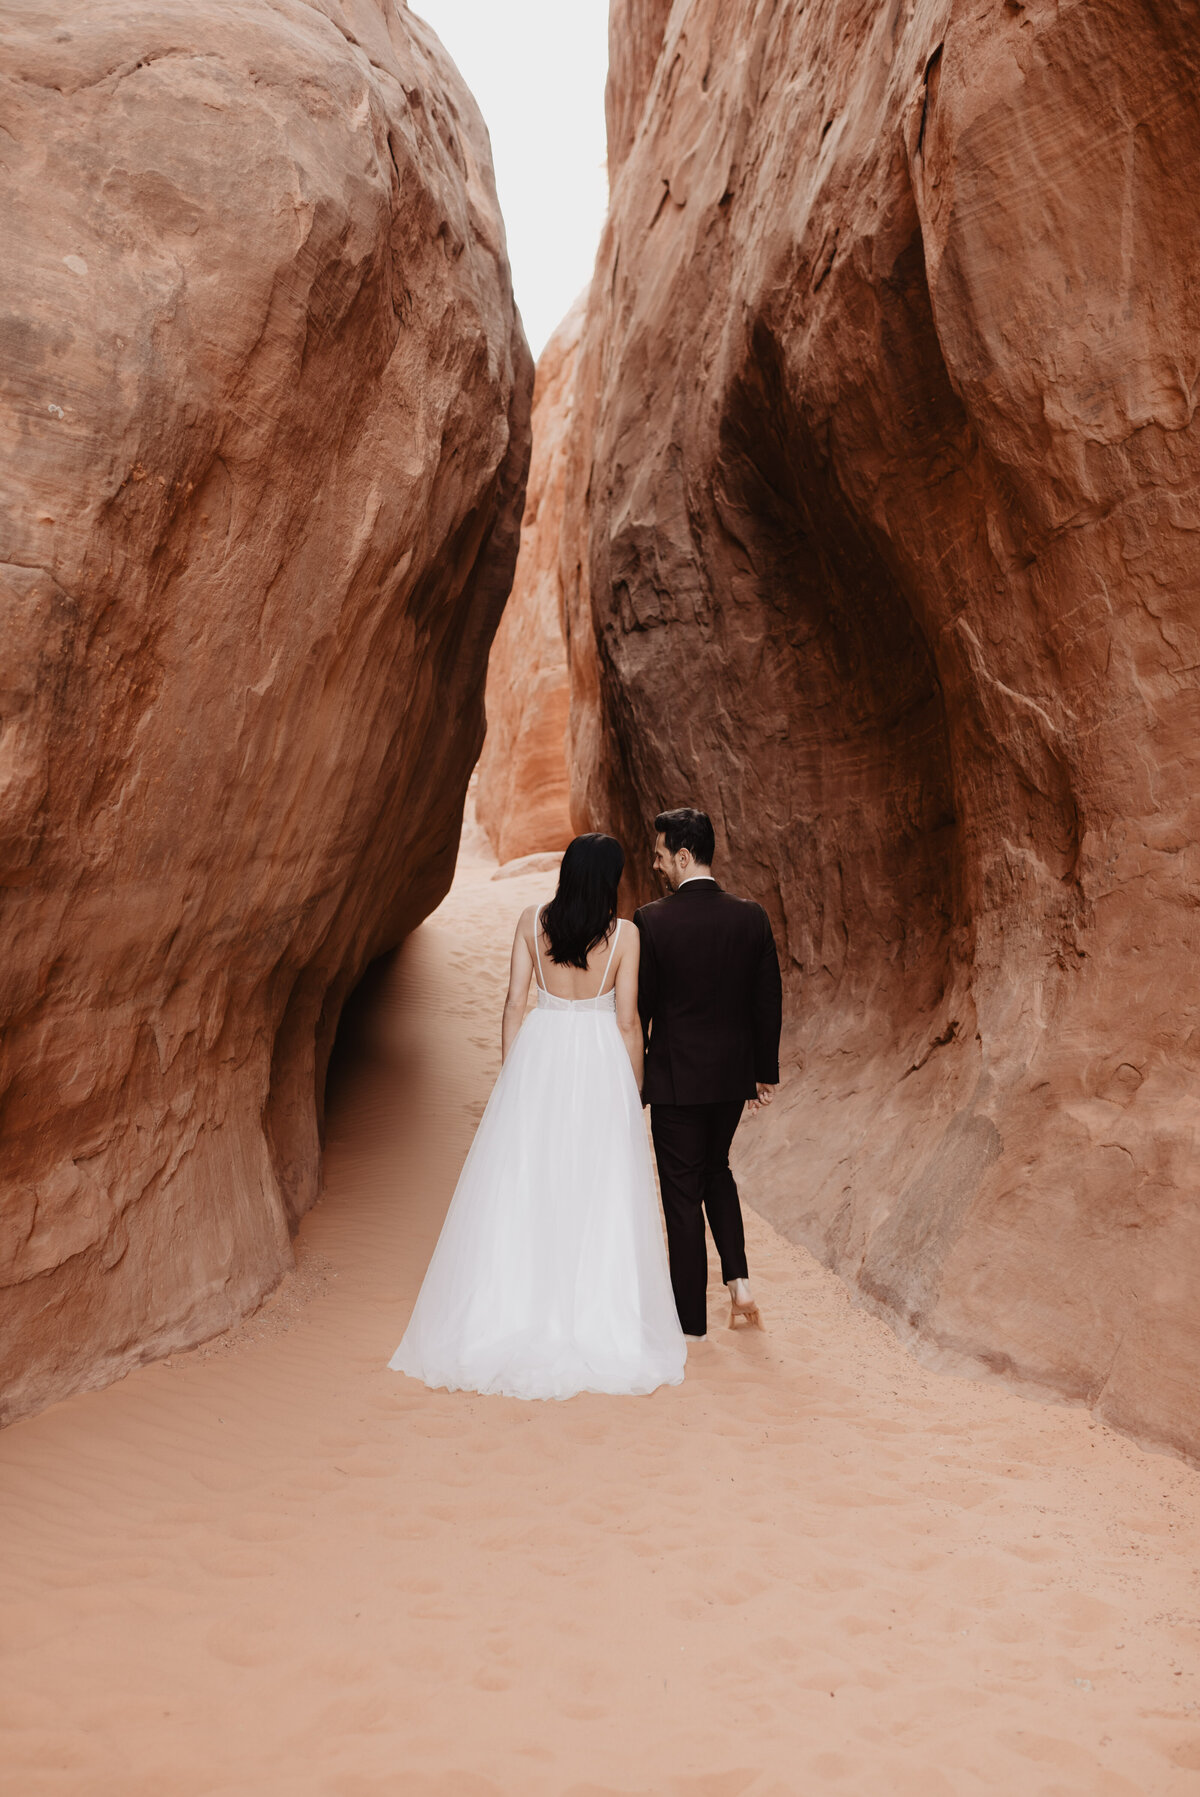 Utah elopement photographer captures couple walking barefoot